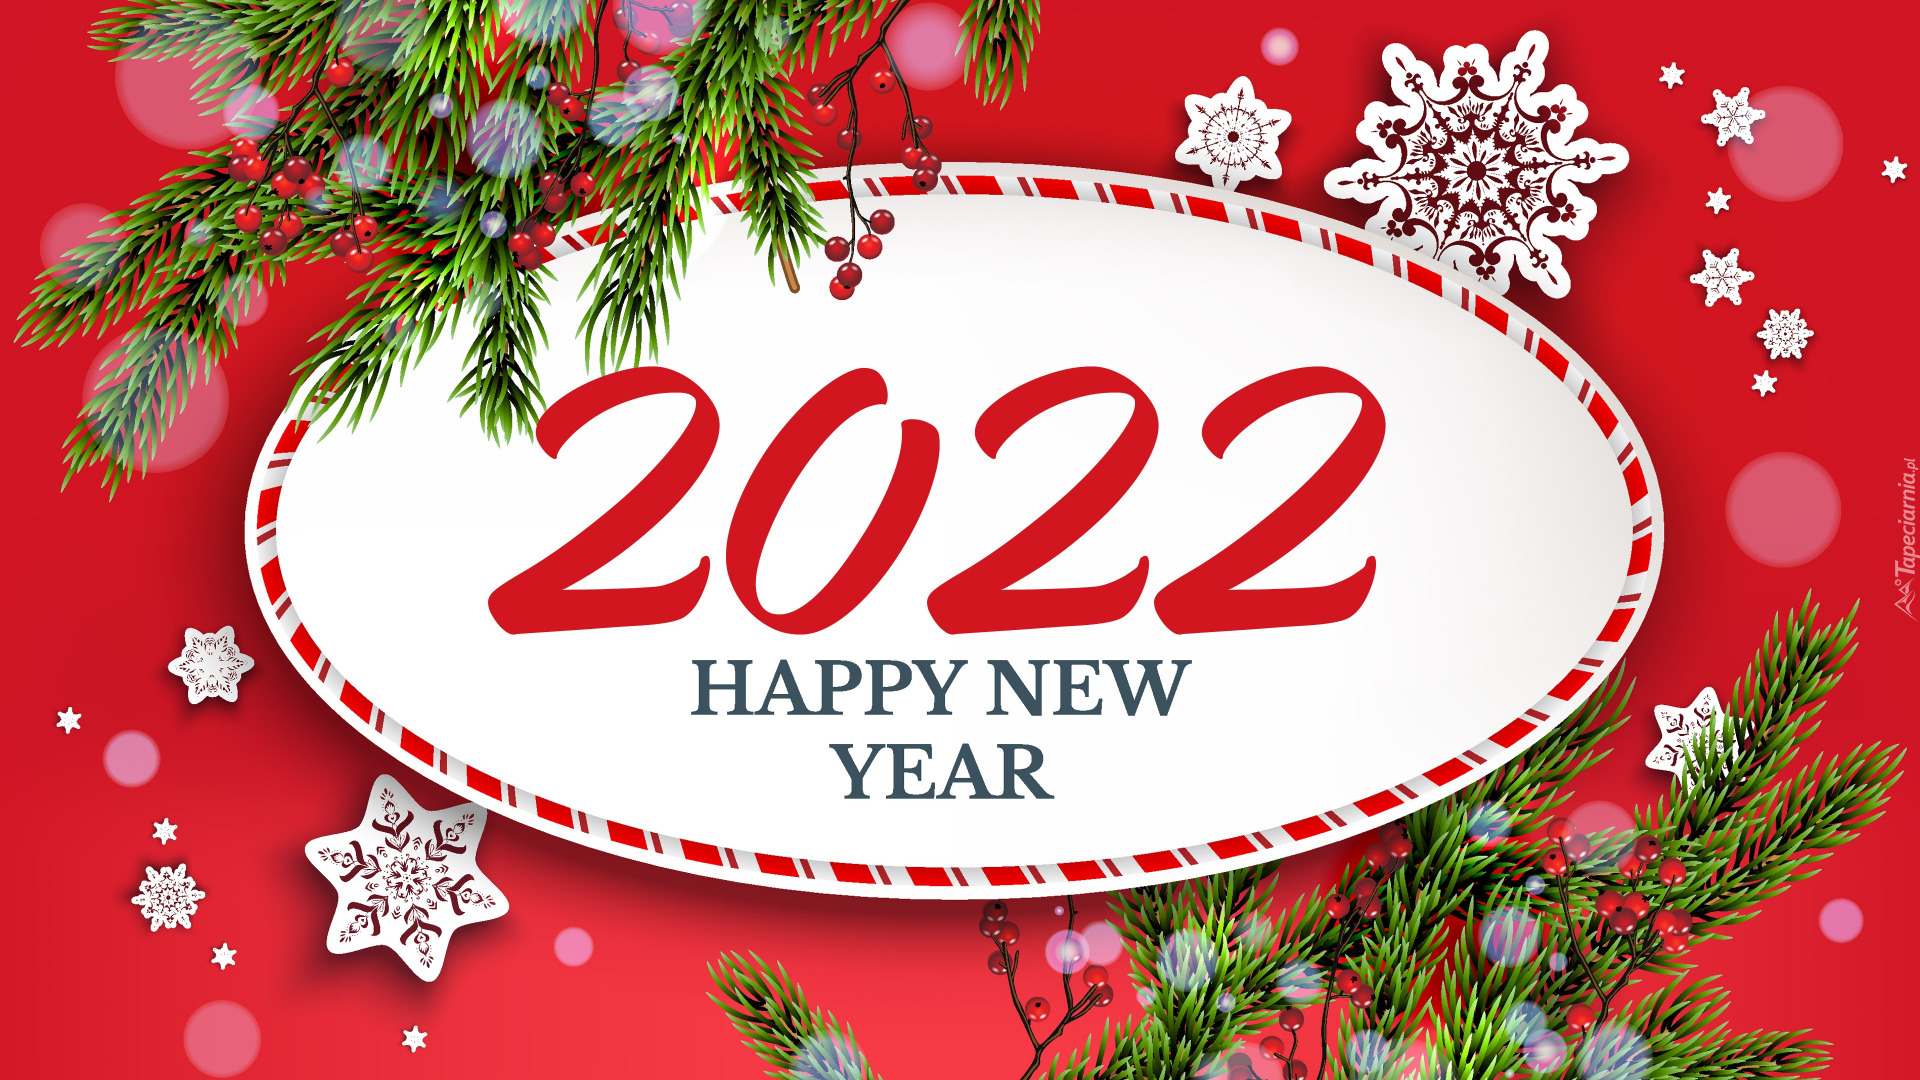 Nowy Rok, 2022, Happy New Year